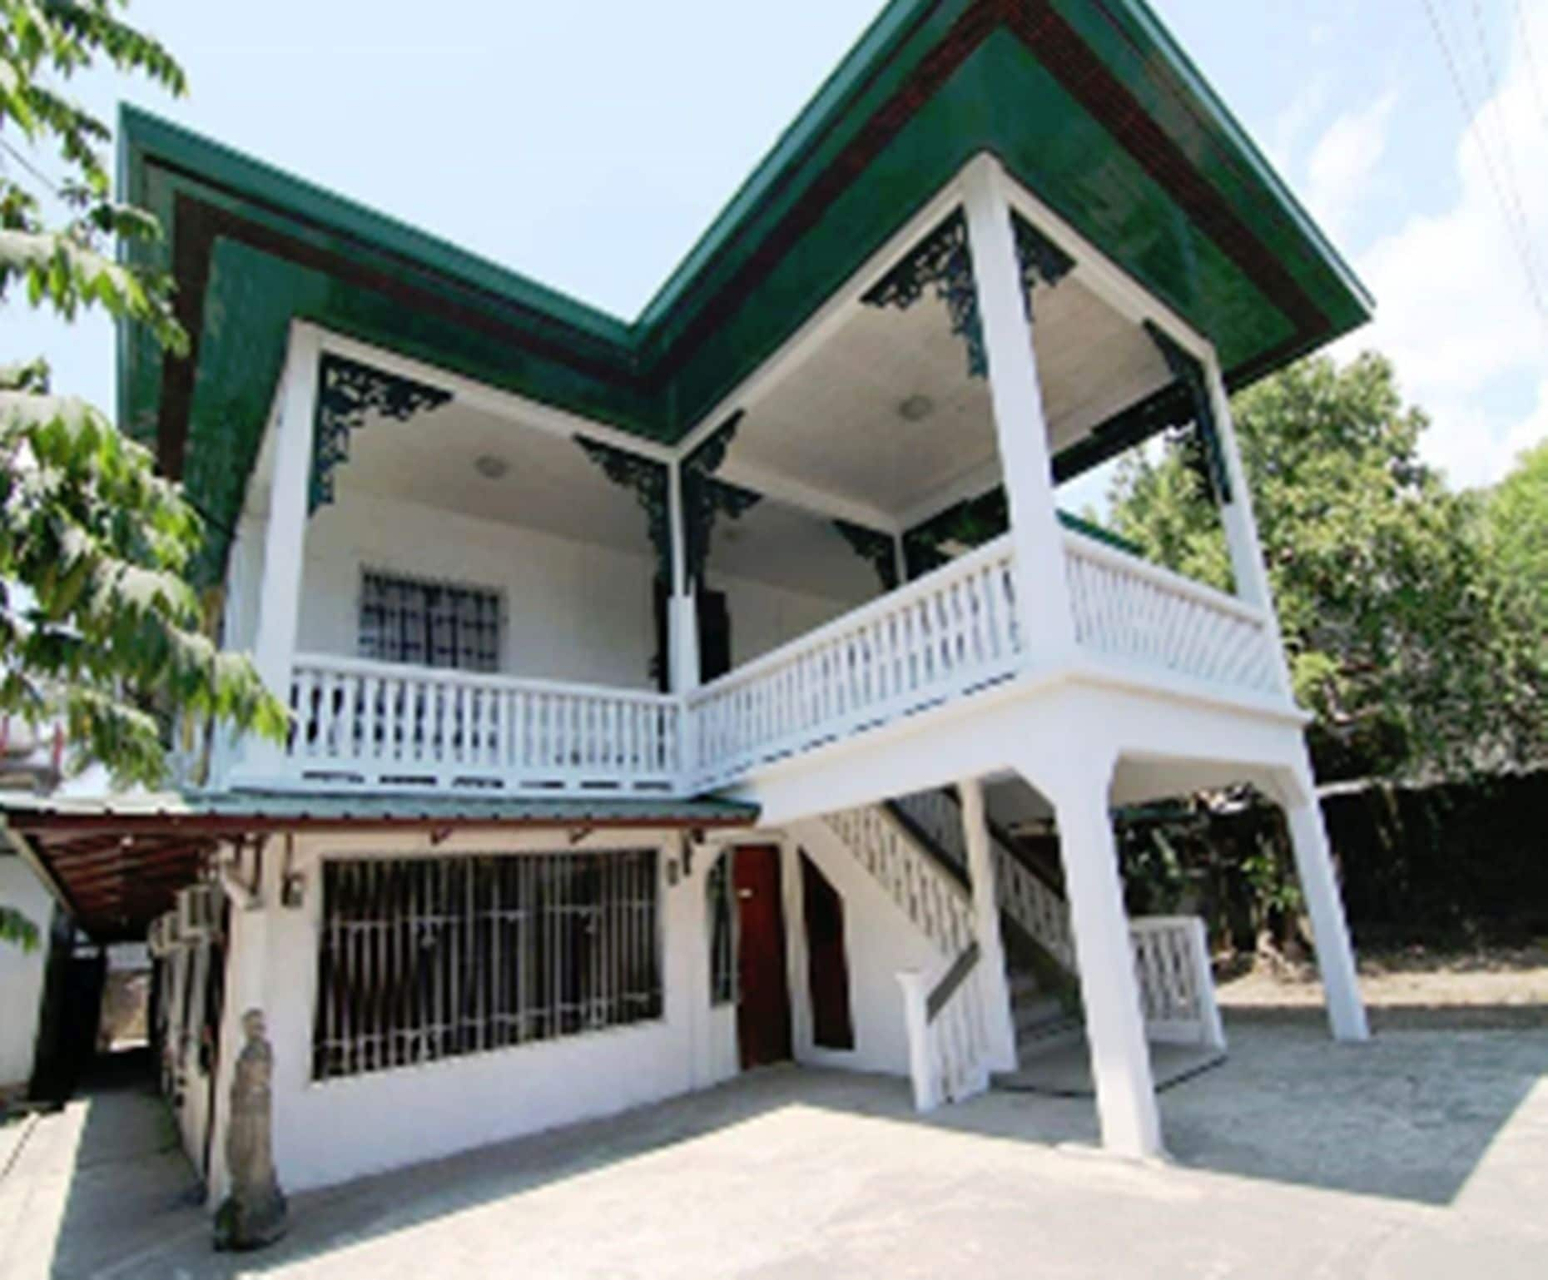 Exterior & Views 1, Casa Tentay, Iloilo City